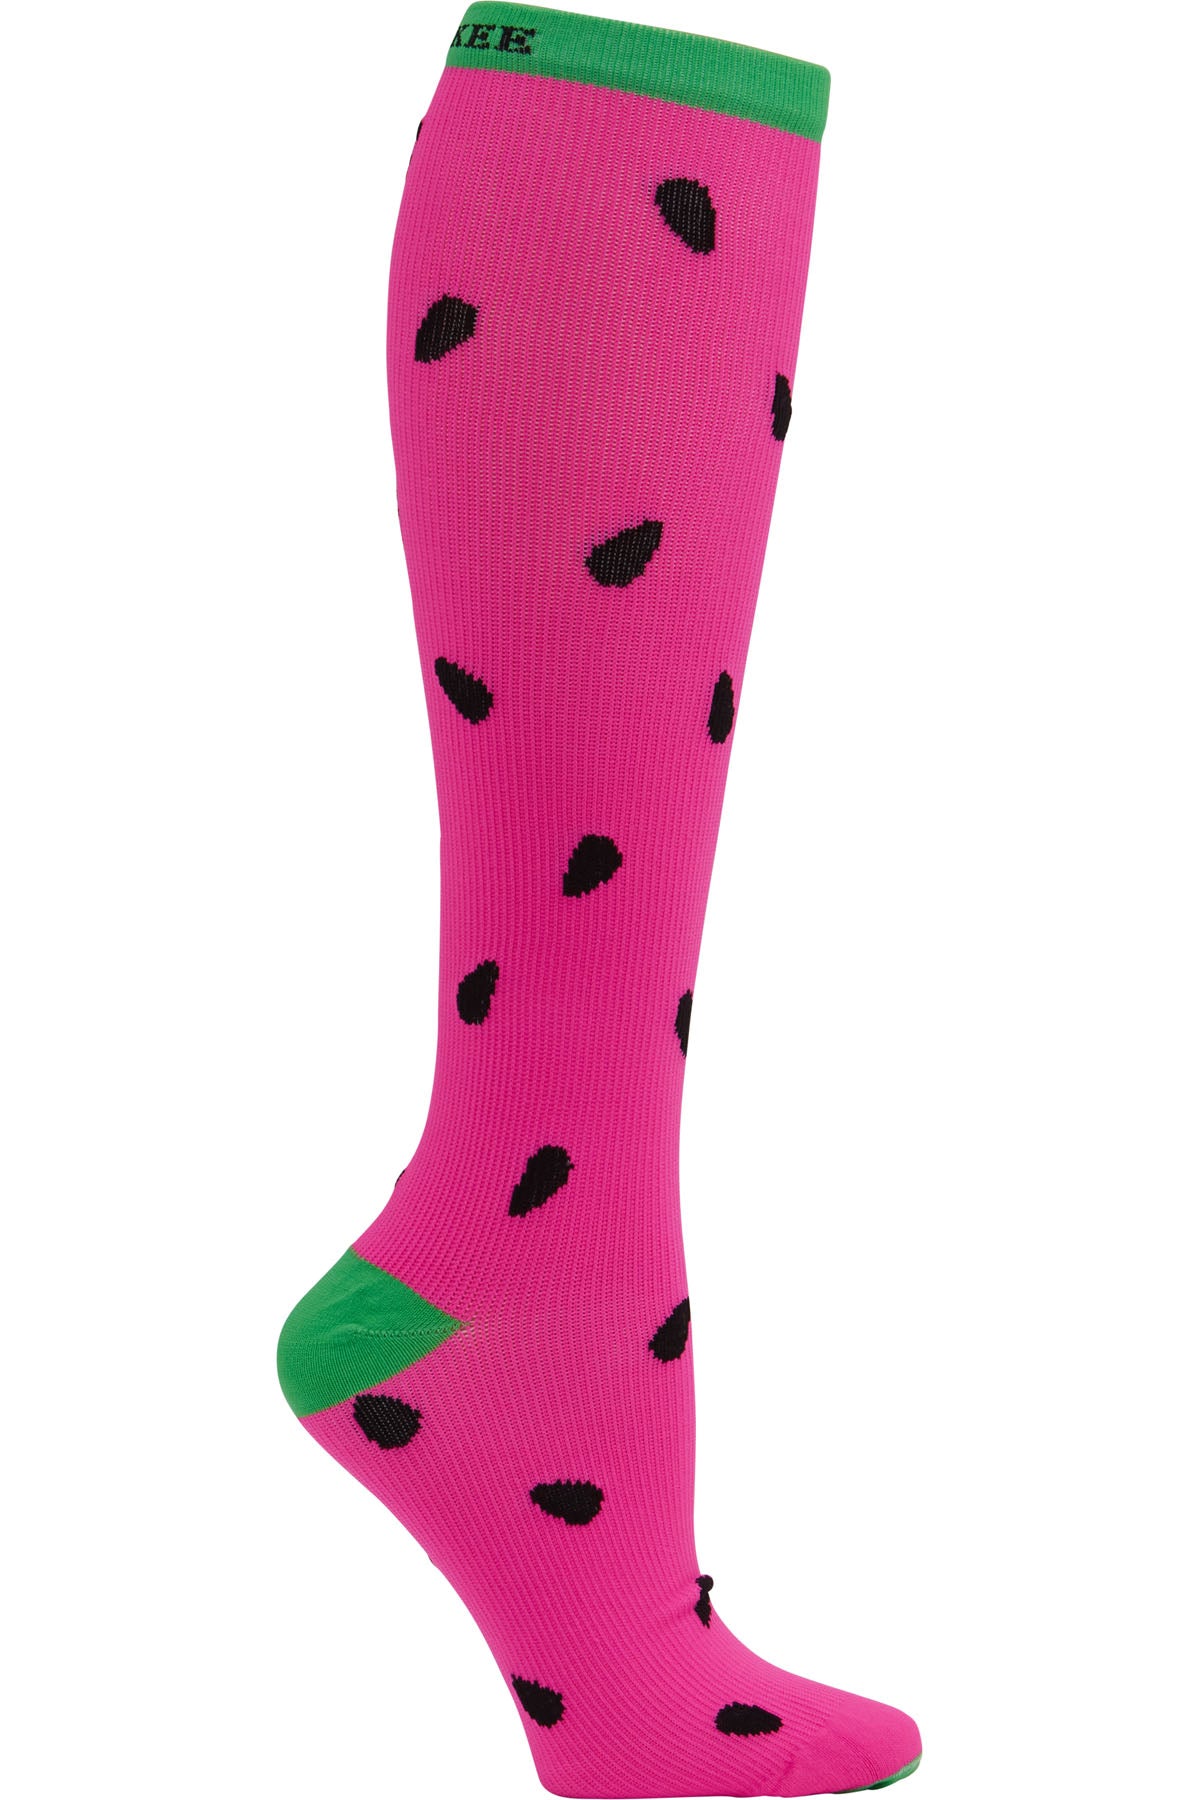 Regular Fit - Compression Socks 10-15mmHg Compression Socks Cherokee Legwear Sweet Watermelon  